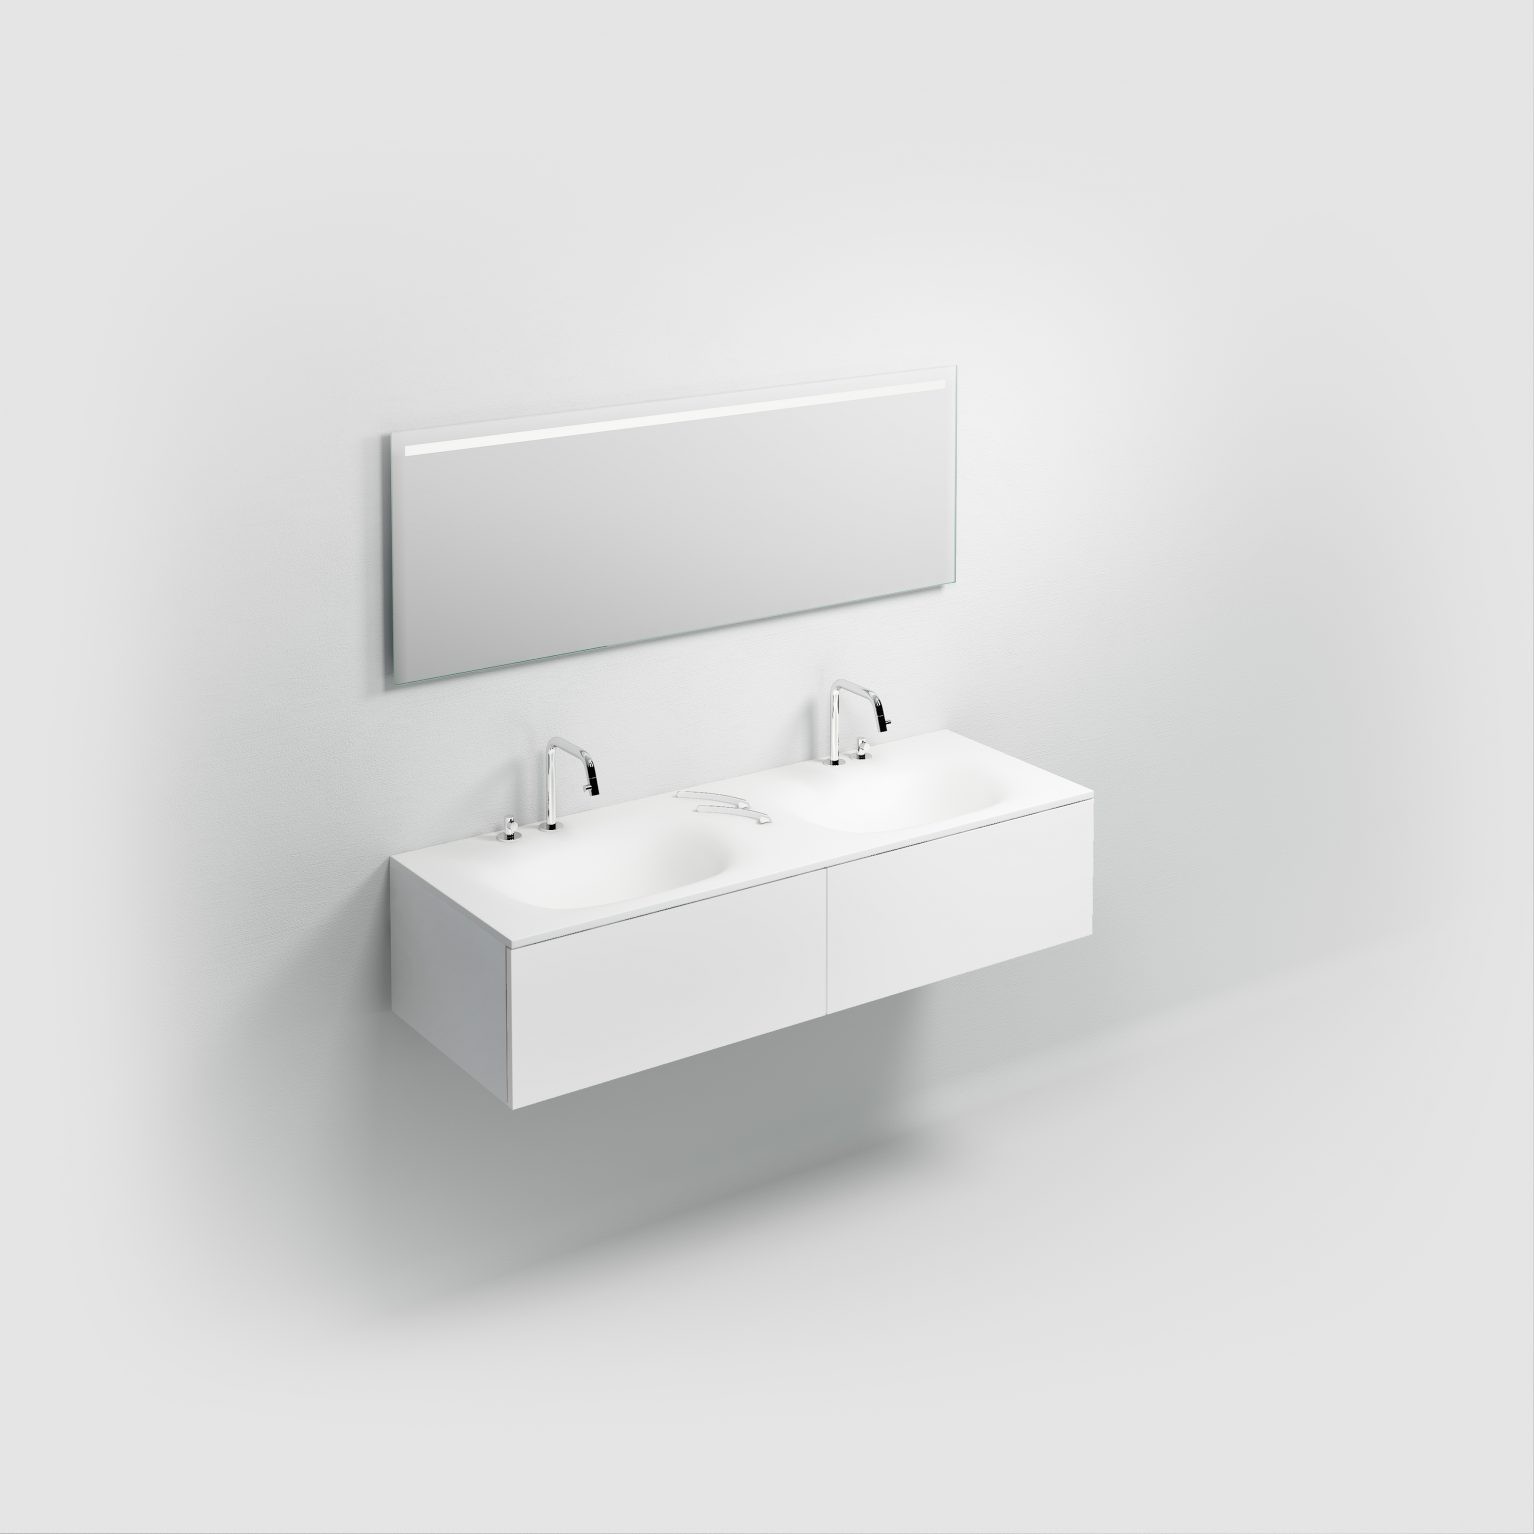 wastafel-wit-toilet-badkamer-luxe-sanitair-Hammock-clou-CL021307008-aluite-140cm-wasbak-waskom-twee-dubbel-blad-kraangat-afvoer-shadow-Sp